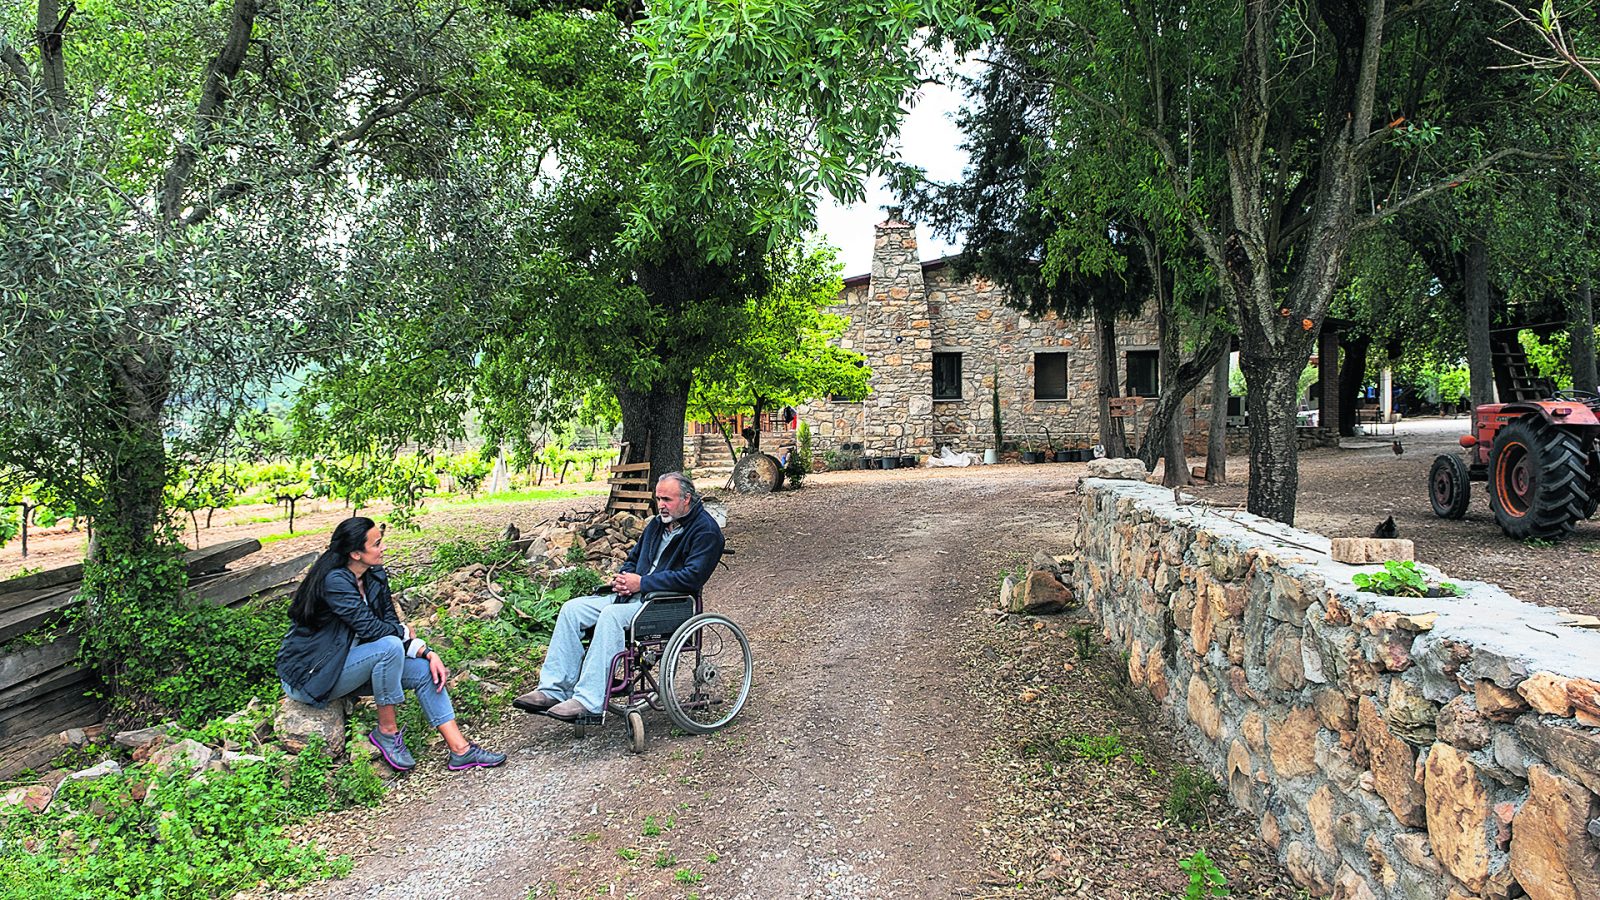 Burası Garova Vineyard. Hikayeleri, Mehmet Vuran’ın geçirdiği kazadan 5 yıl sonra tekerlekli sandalyesinde bağı izlediği bir gün ‘Şarap yapalım’ demesiyle başlıyor.